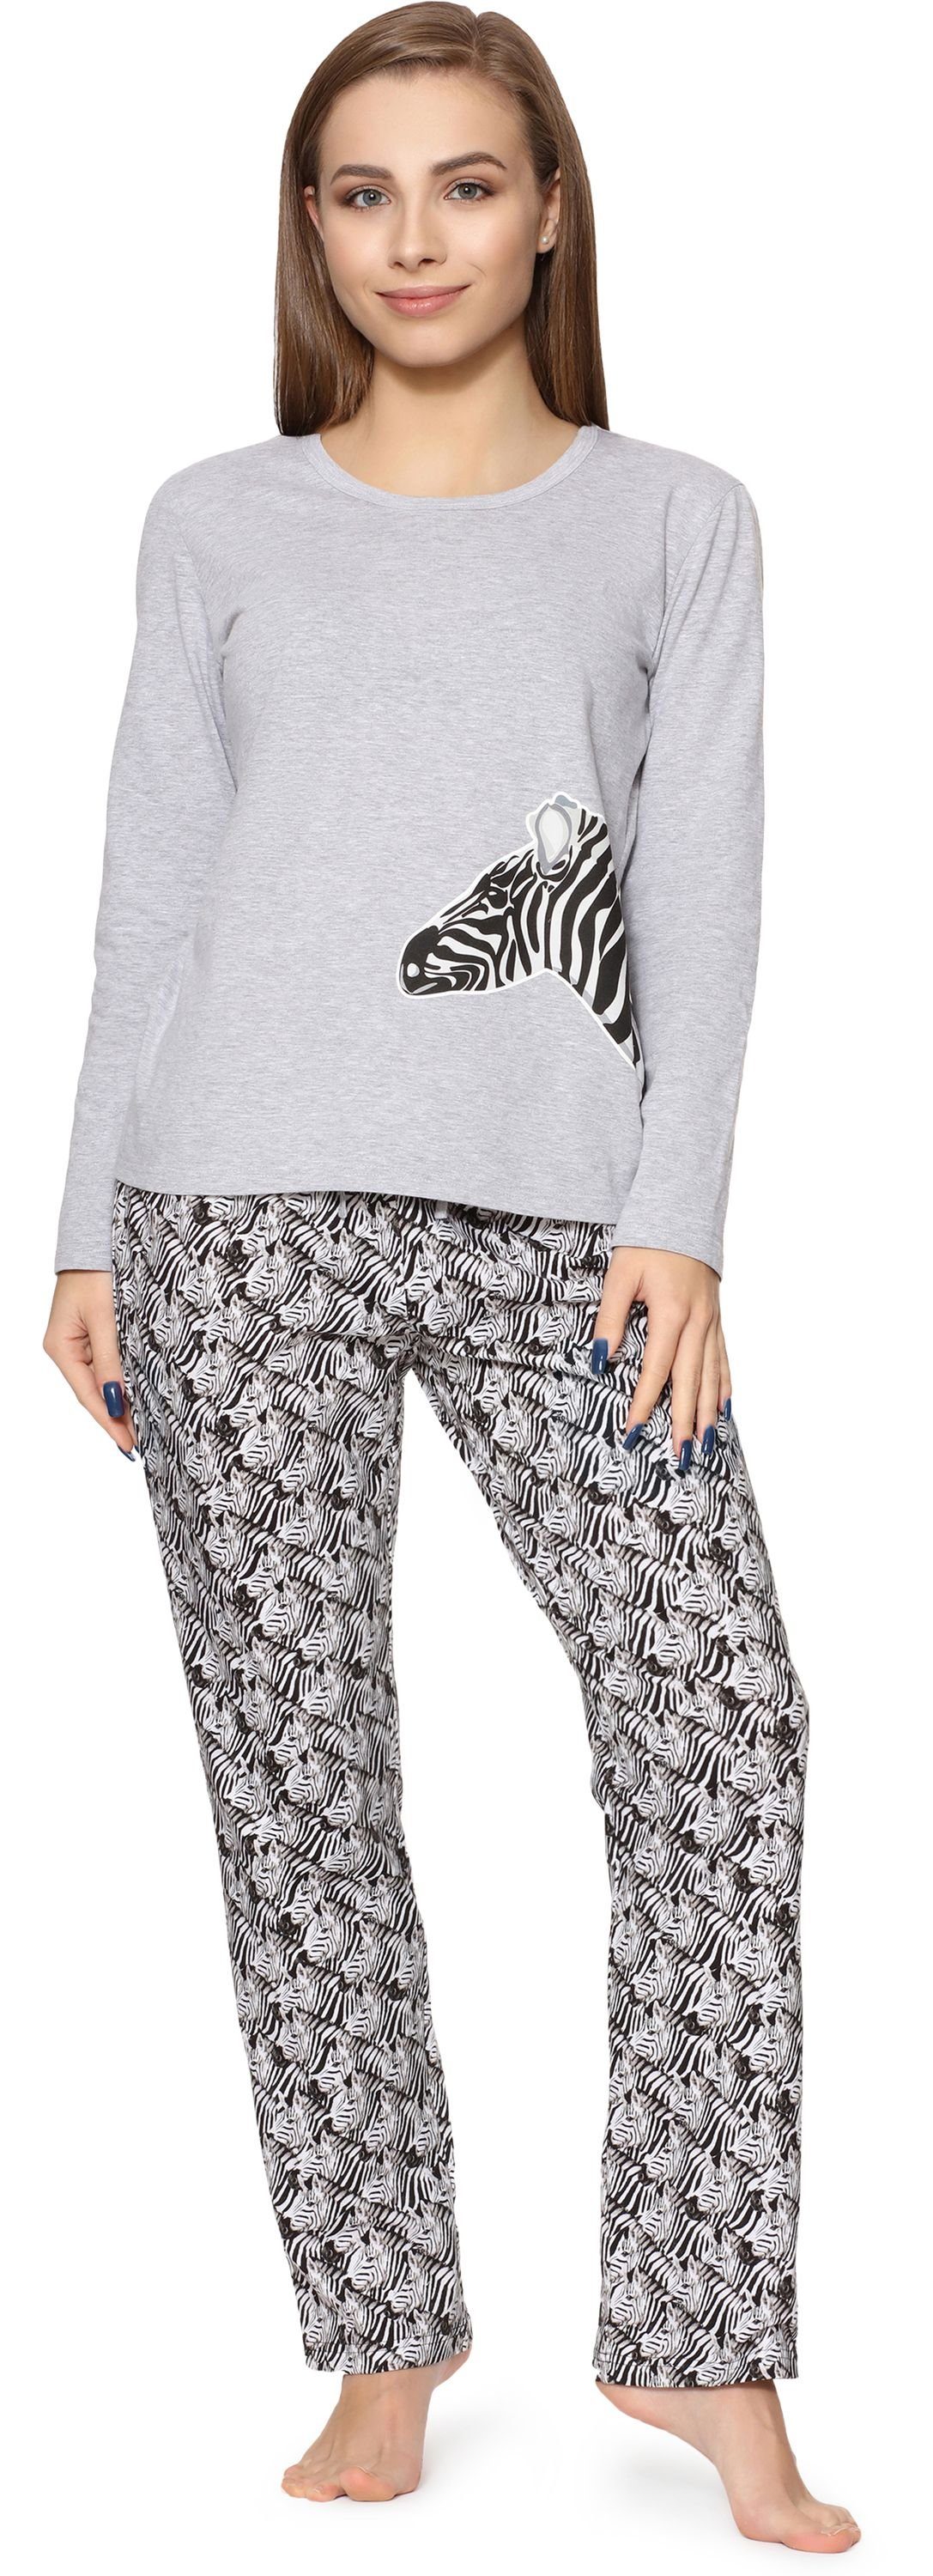 Merry Style Schlafanzug Damen Zweiteilieger Schlafanzug Pyjama Lang Winter MS10-192 Melange Zebra